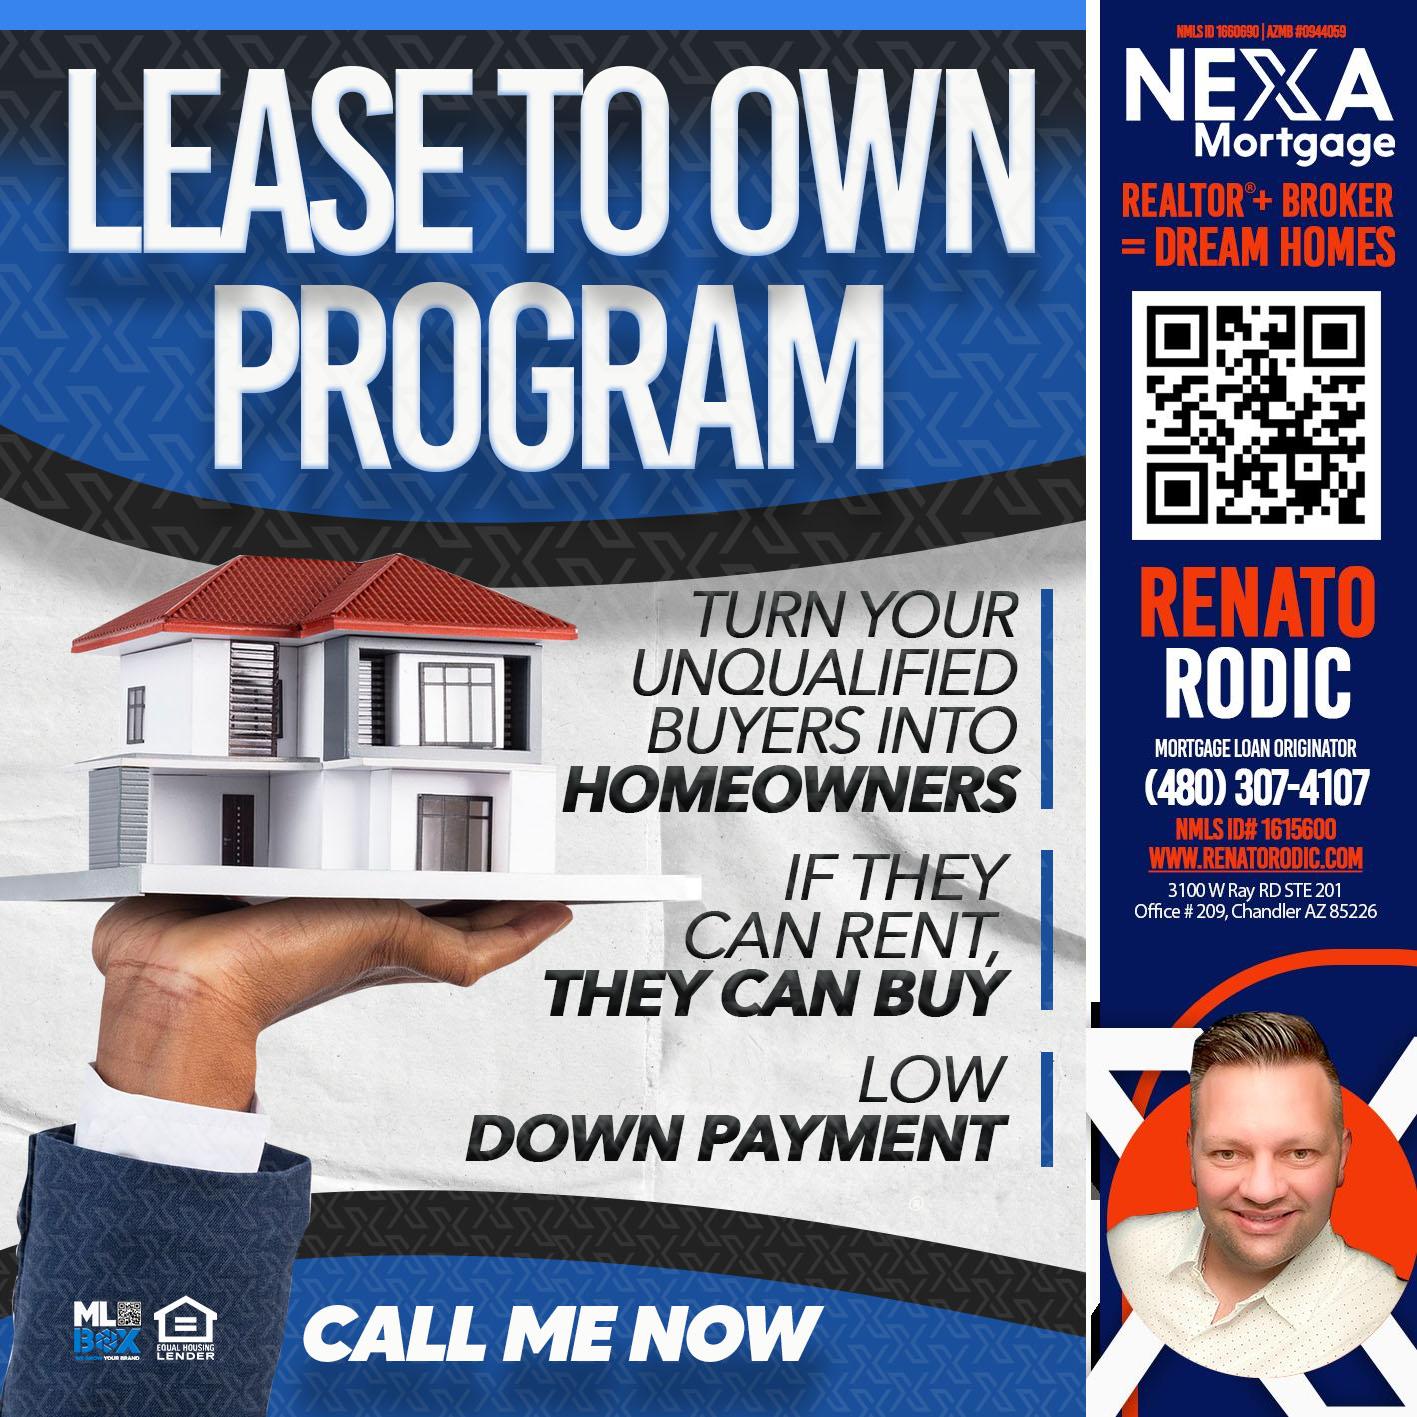 program fix - Renato Rodic -Mortgage Loan Originator